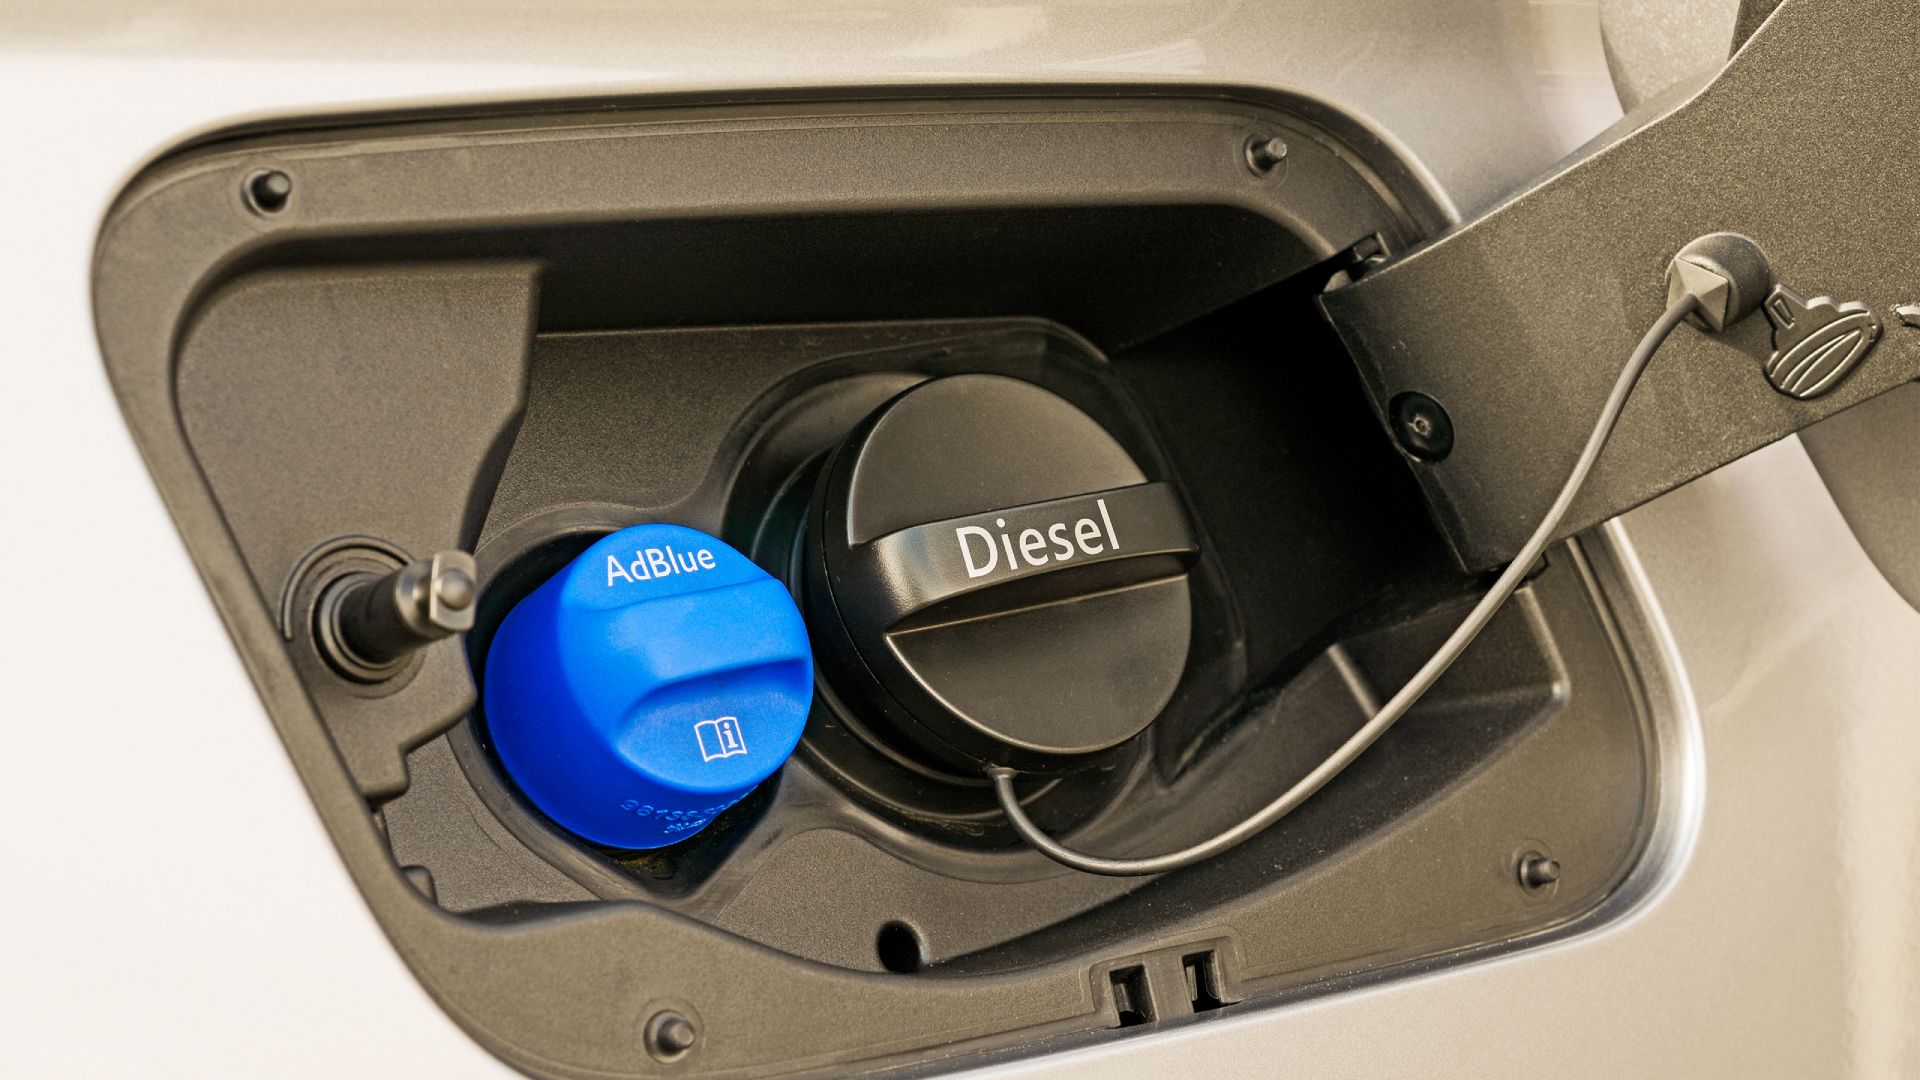 AdBlue – ein Produkt zur Reduzierung der Emissionen von Dieselmotoren